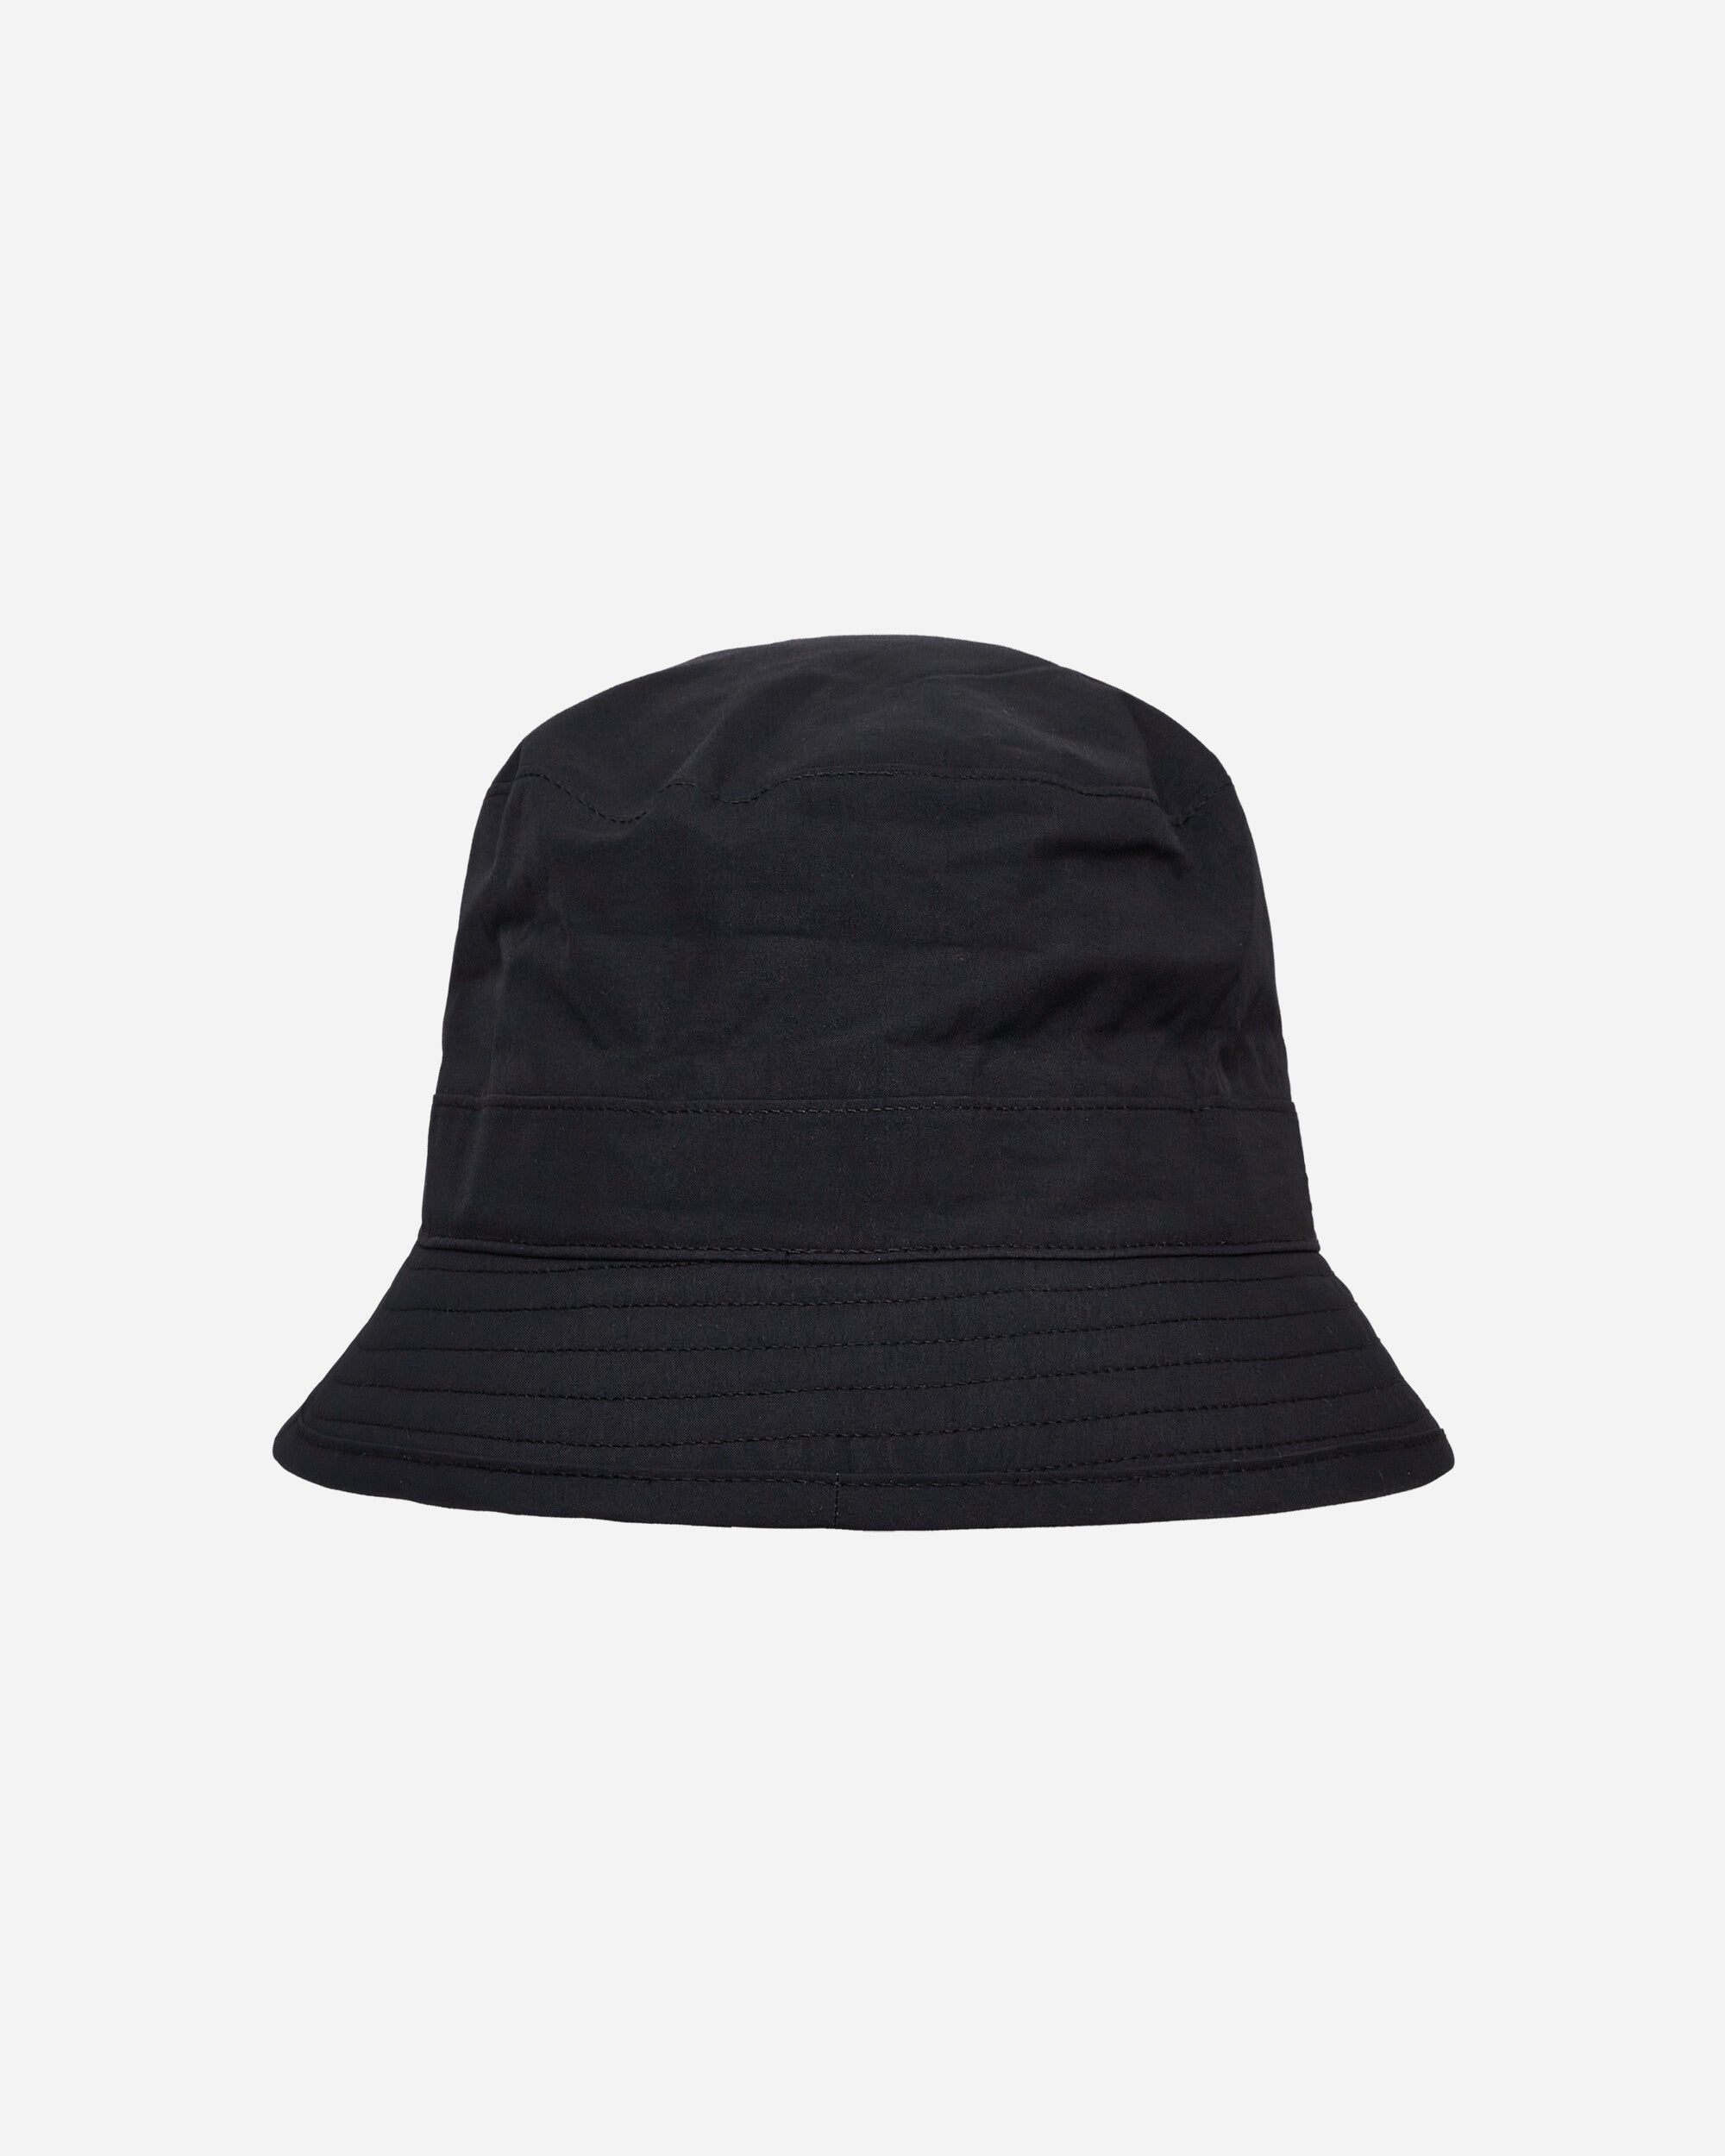 Barbour Gtx Hat X Goldwin Black Hats Caps BRACC0178 100